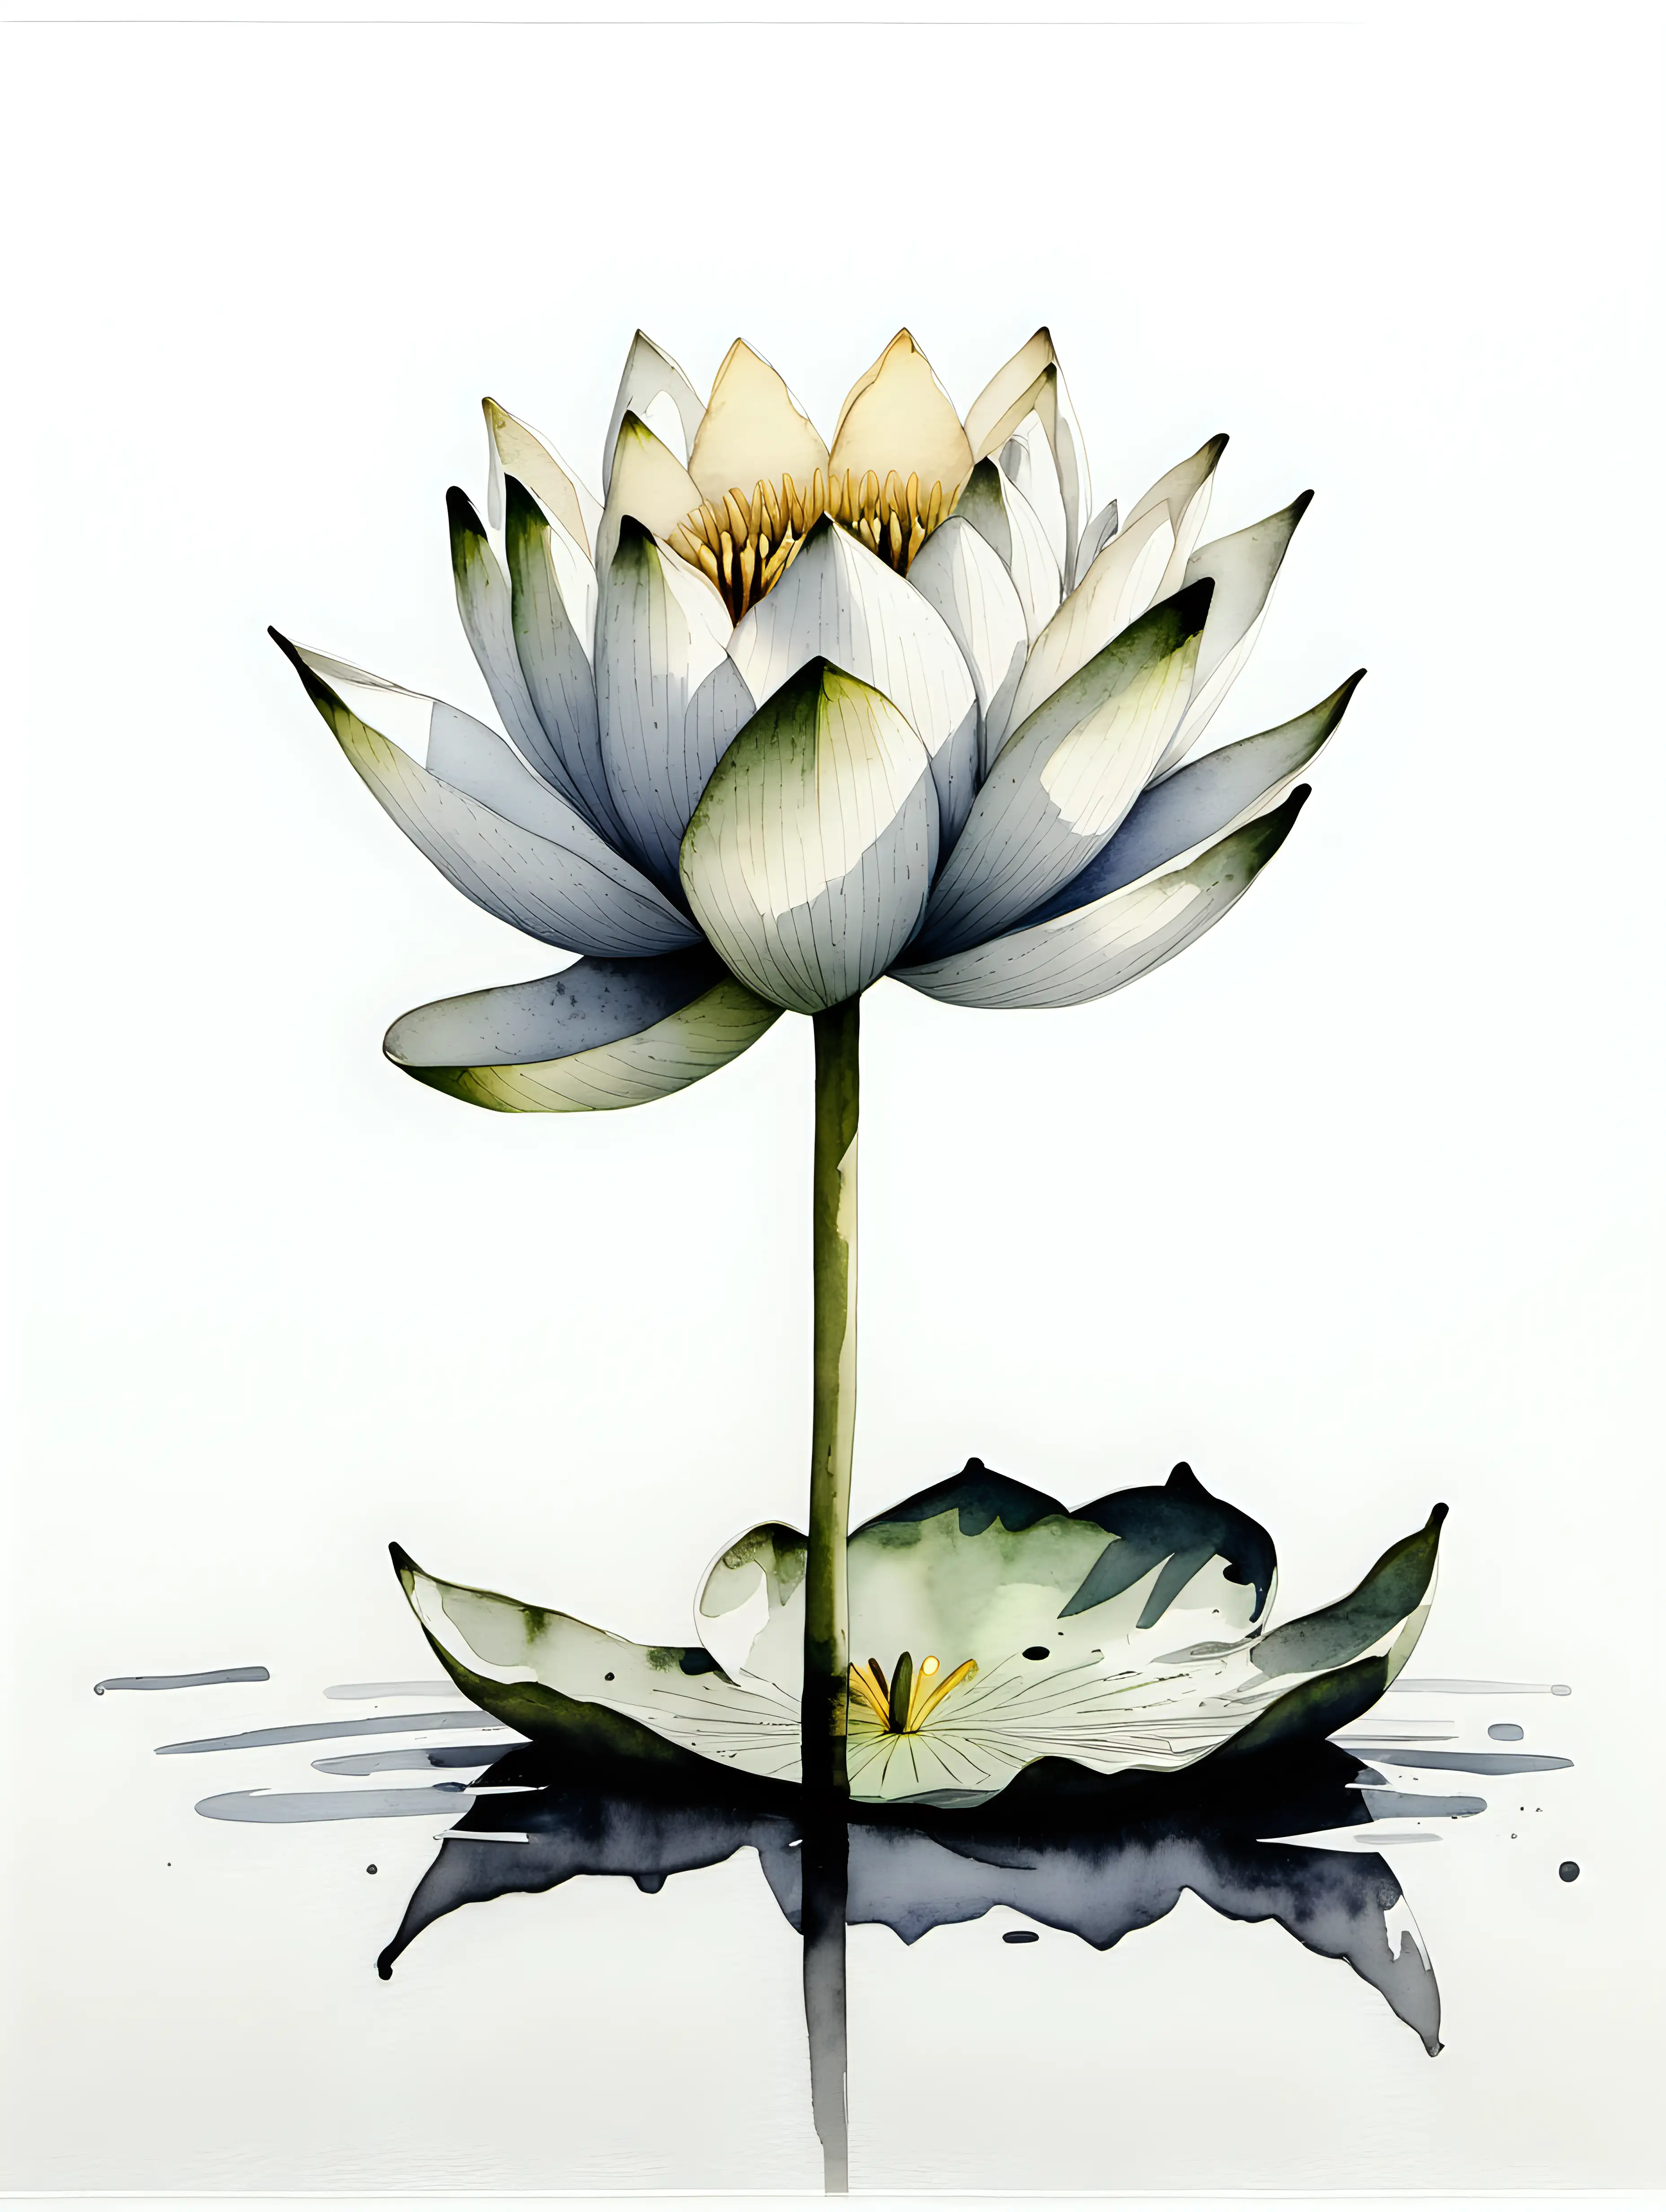 Elegant Minimalist Watercolor Painting Unstemmed Water Lily in Black Ink